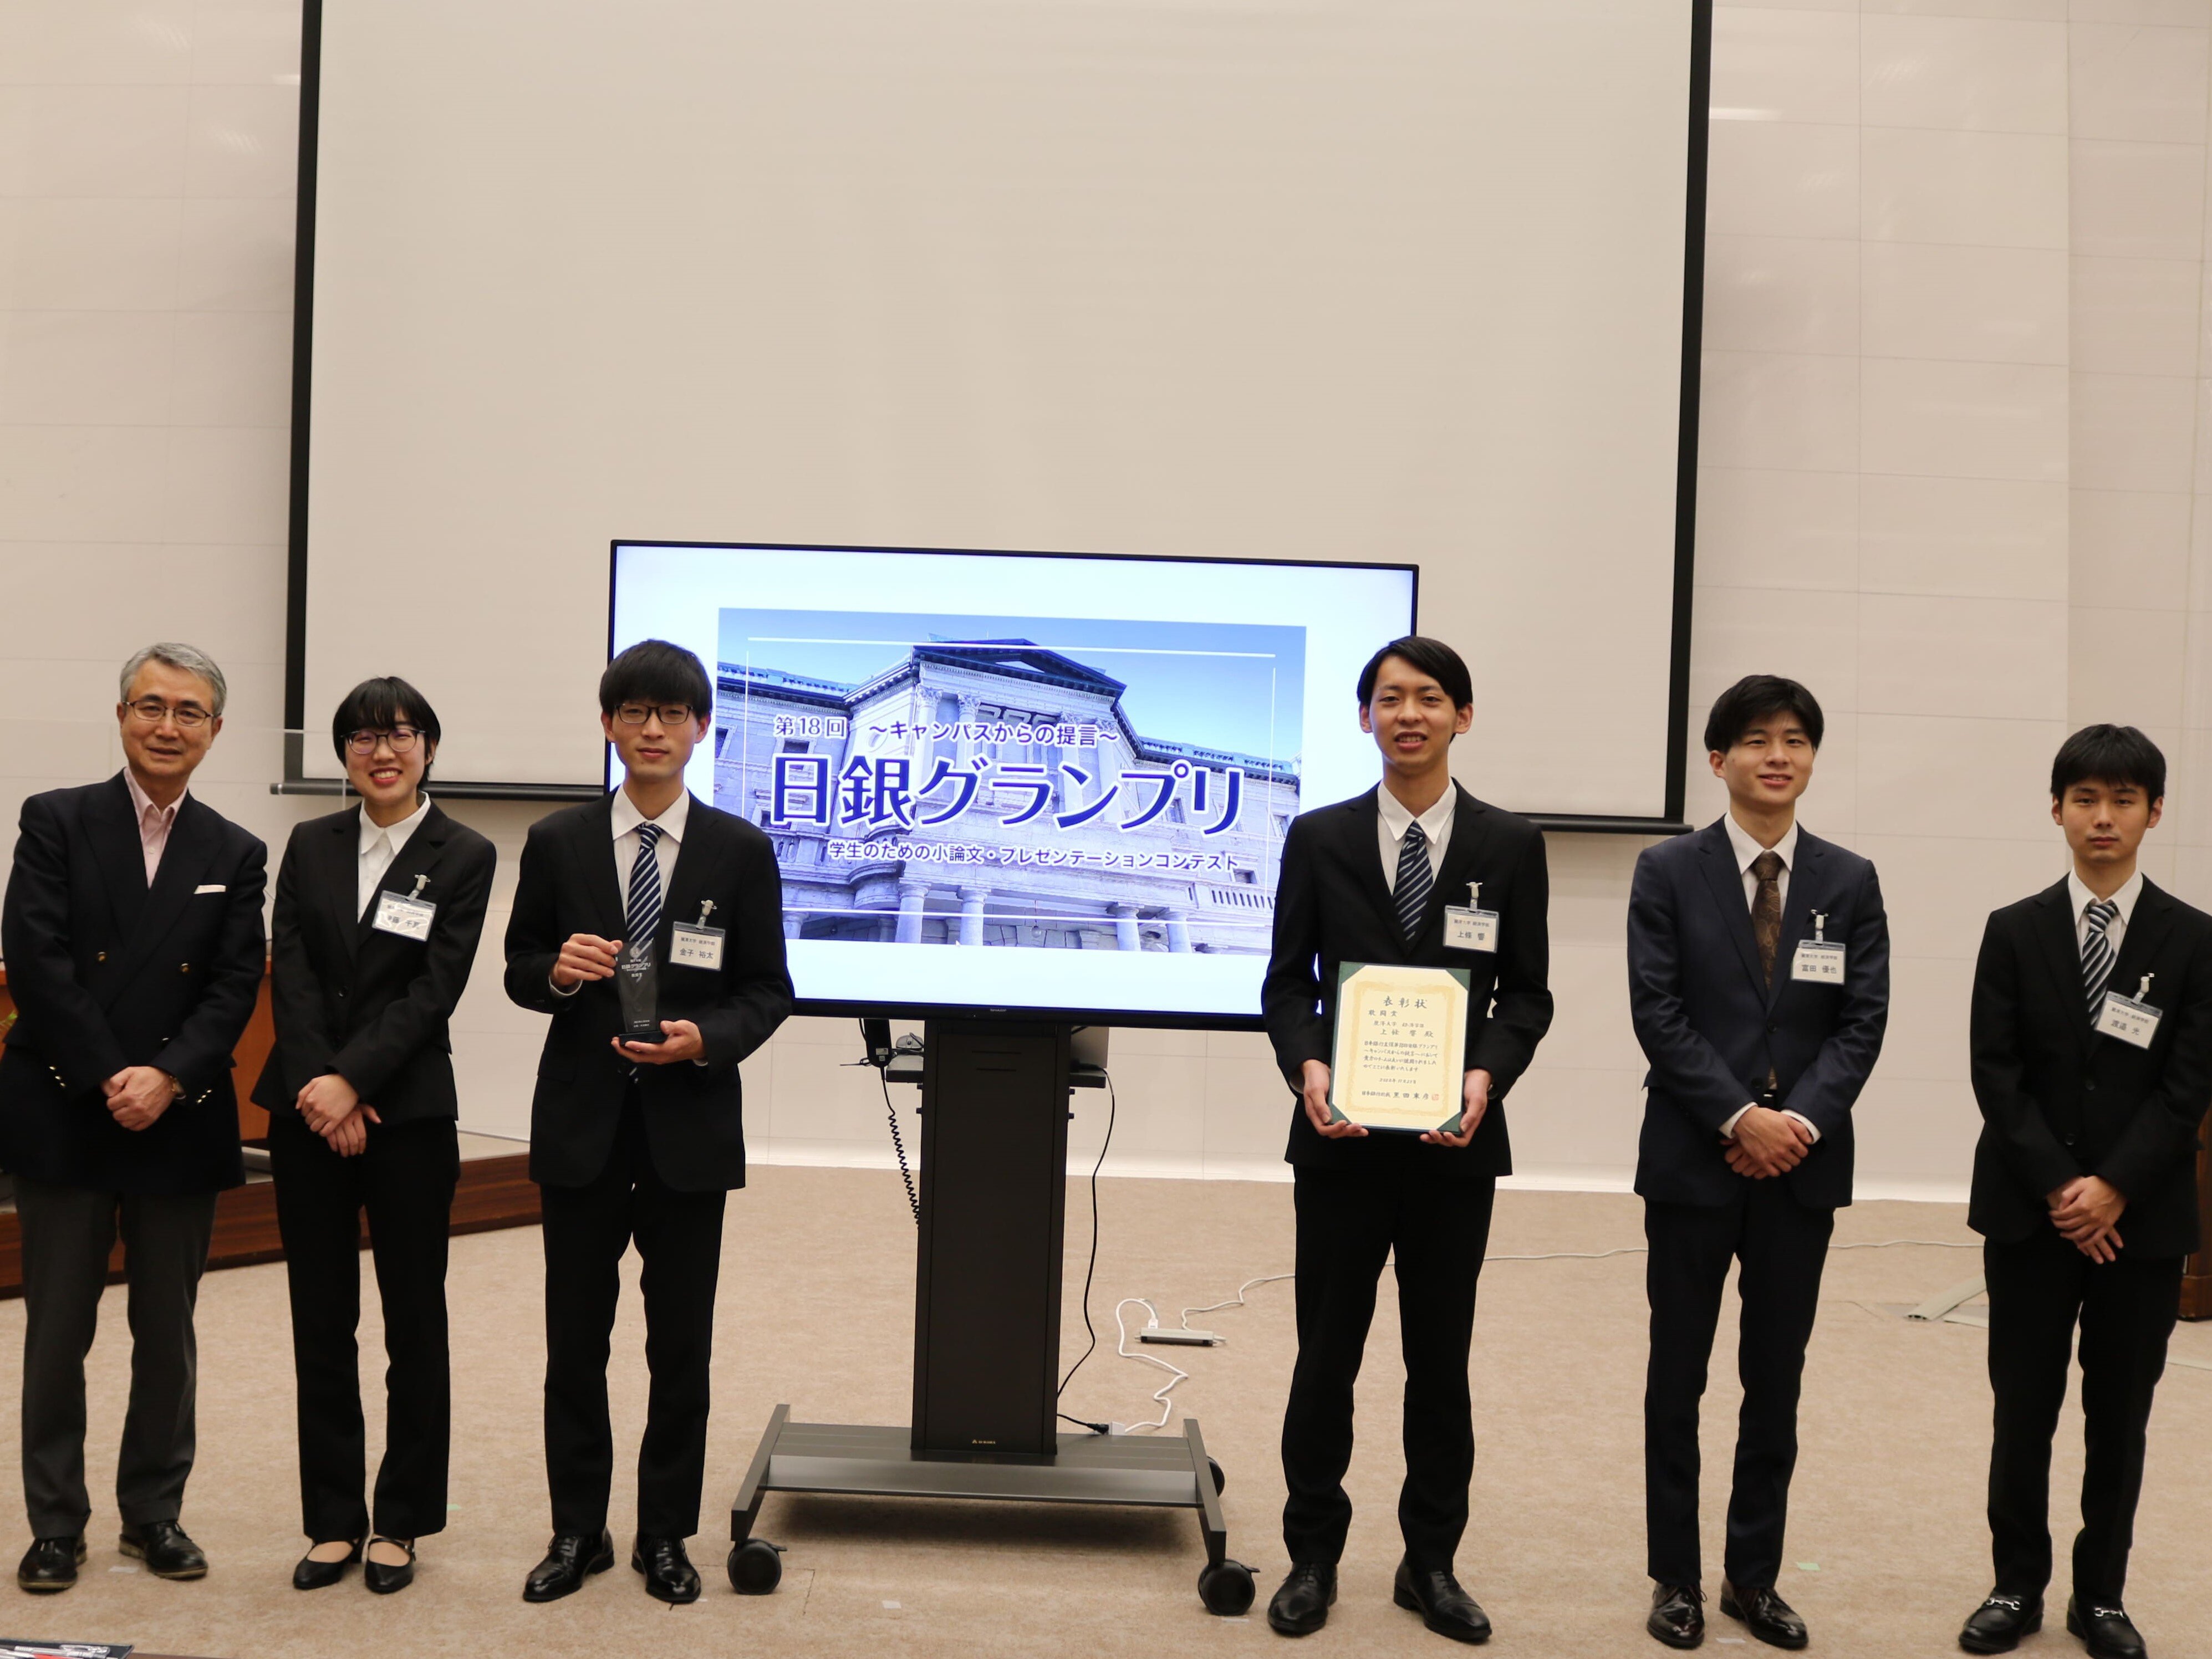 経済学部3年生が「日銀グランプリ」の決勝で、「敢闘賞」を受賞